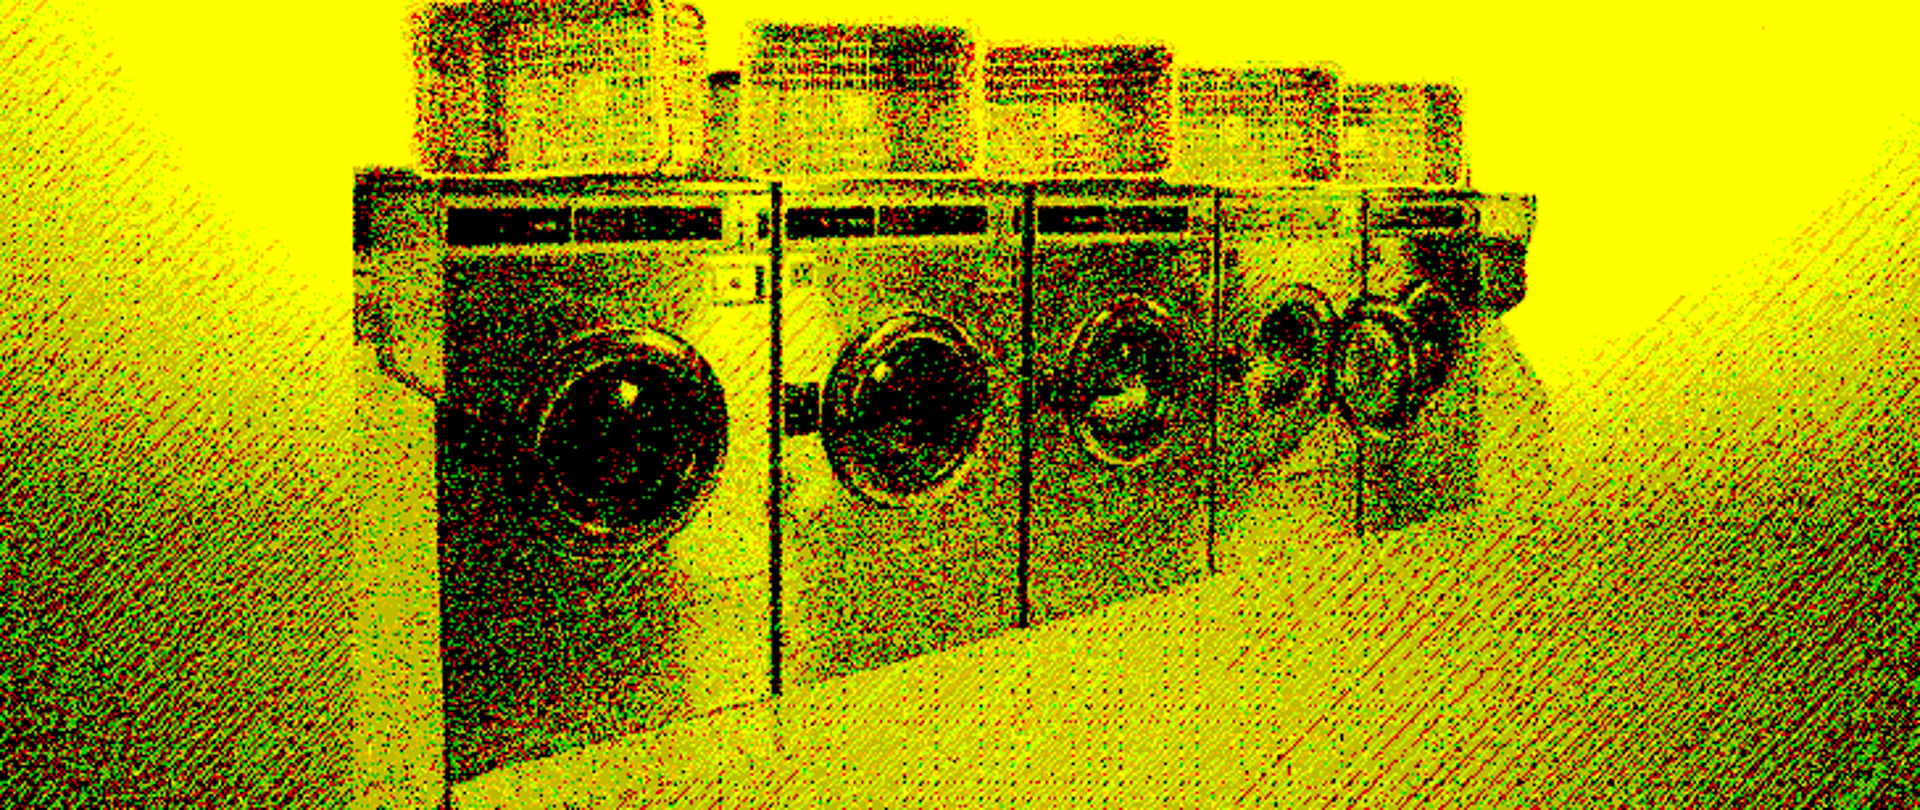 Baner przedstawiający pralnie - pralki stające w szeregu a na nich kosze na pranie.